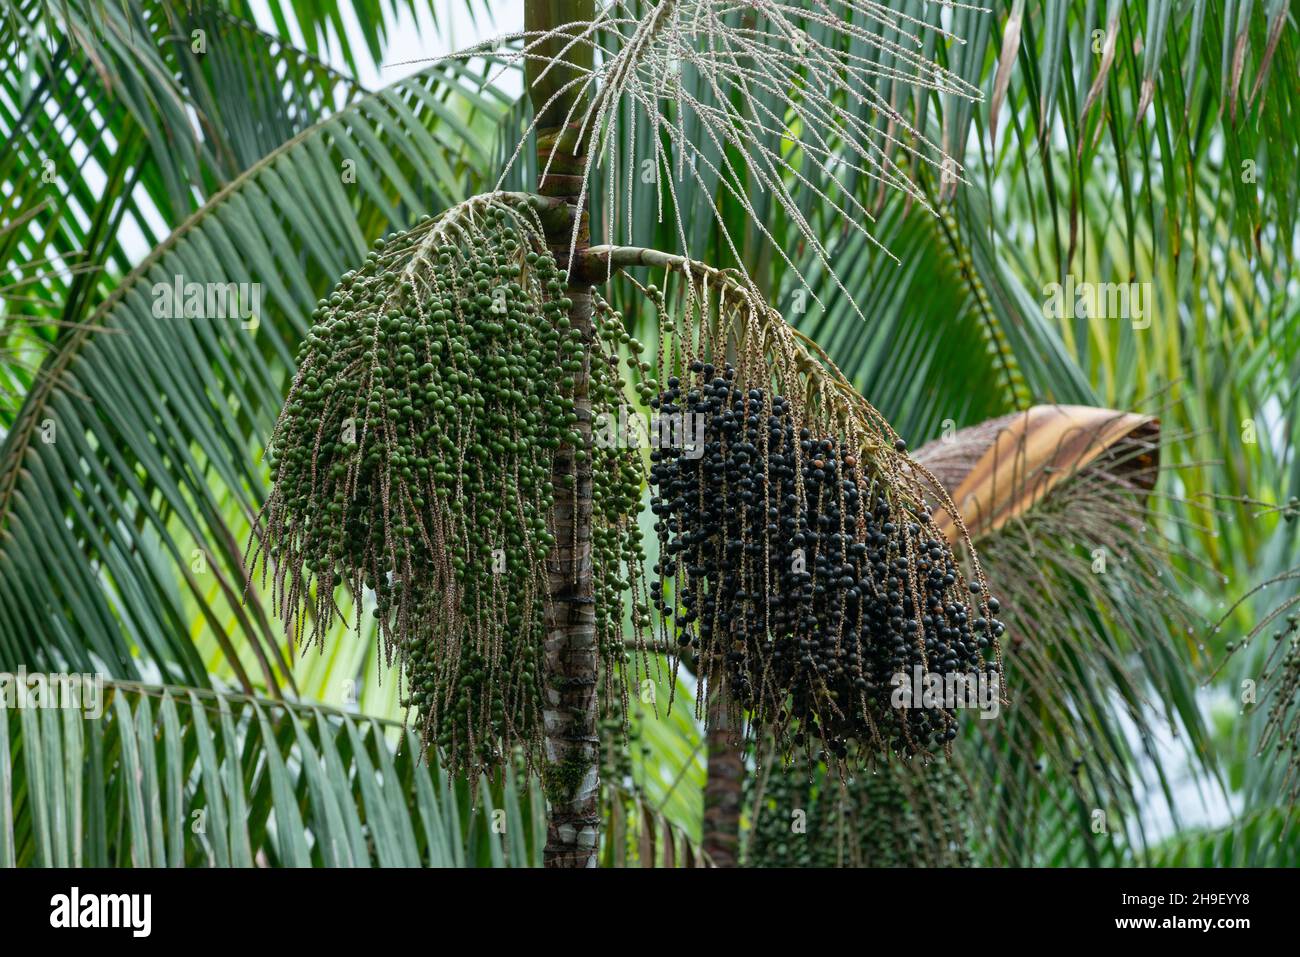 Palmiers d'Açai chargés de baies, de la forêt amazonienne du Brésil Banque D'Images